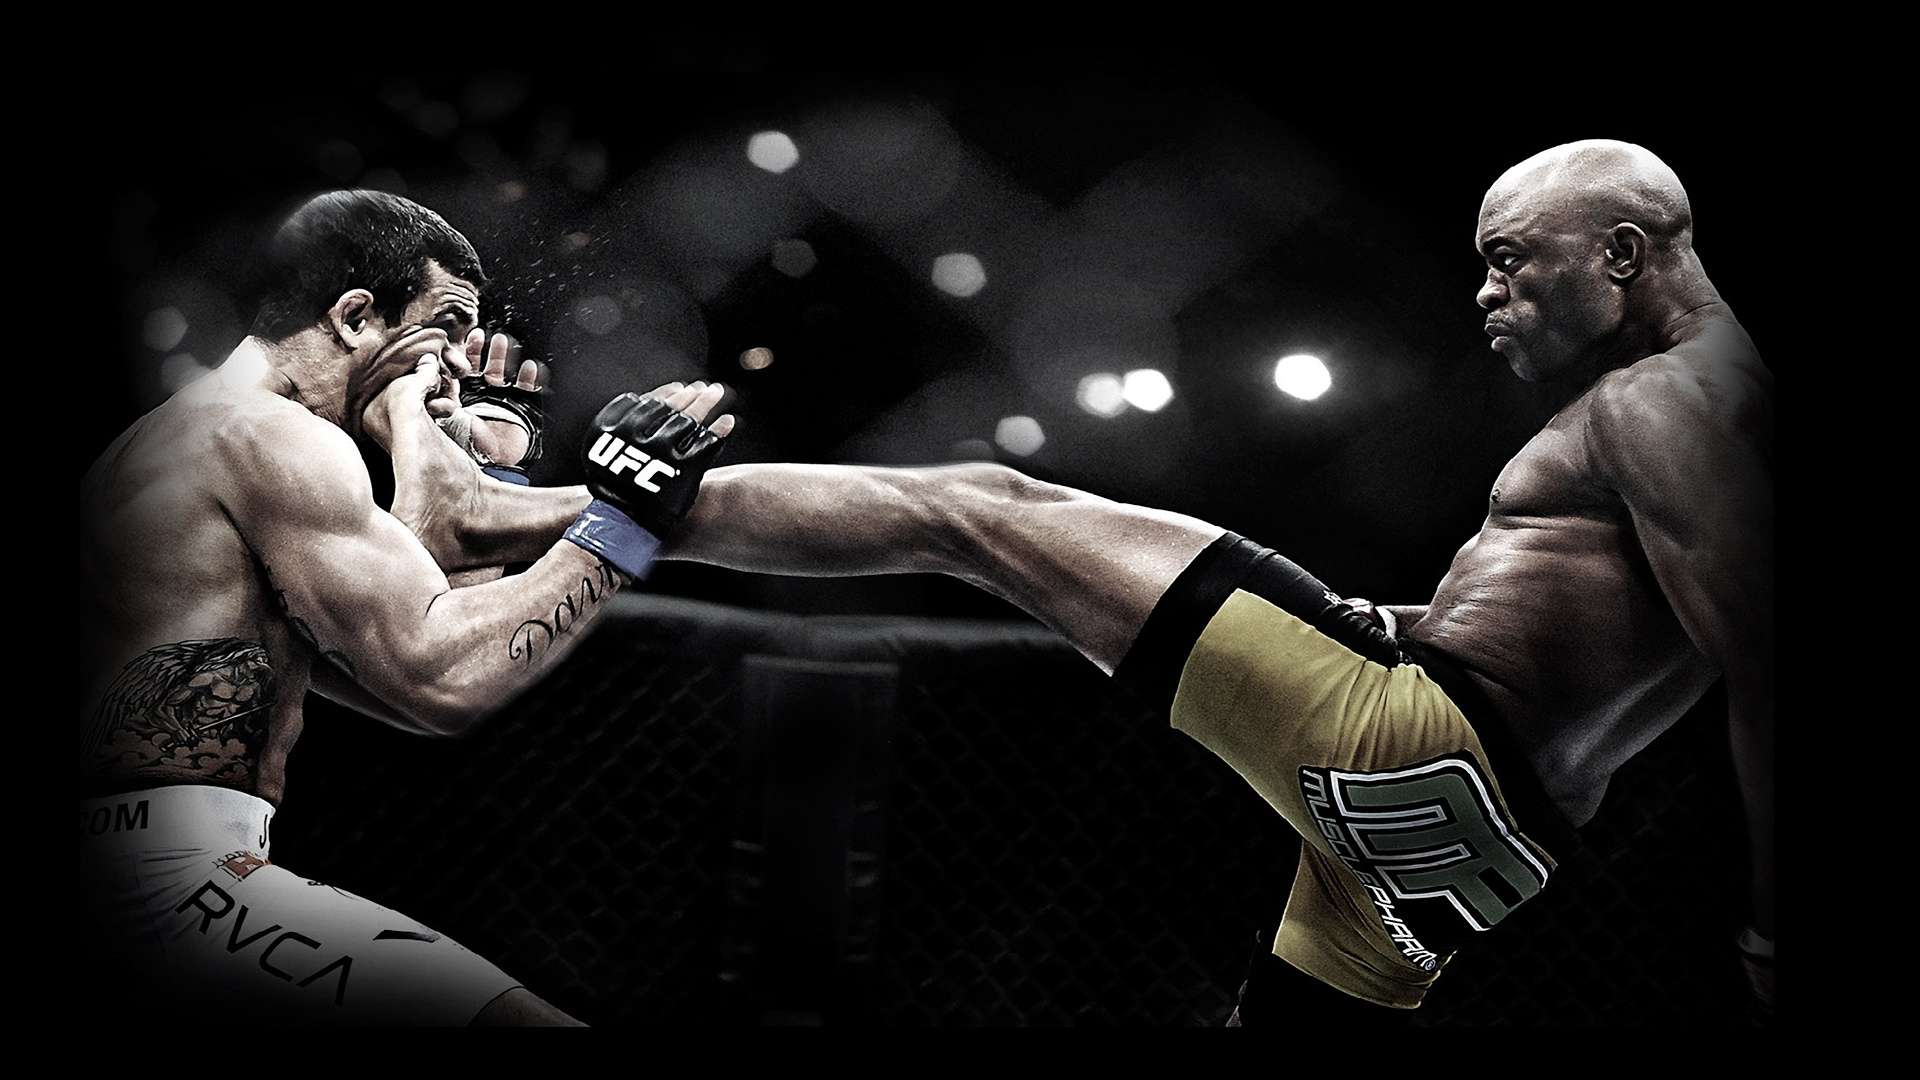 Combat Sports: Brazilian-American MMA, Anderson da Silva, Front Kick. 1920x1080 Full HD Wallpaper.